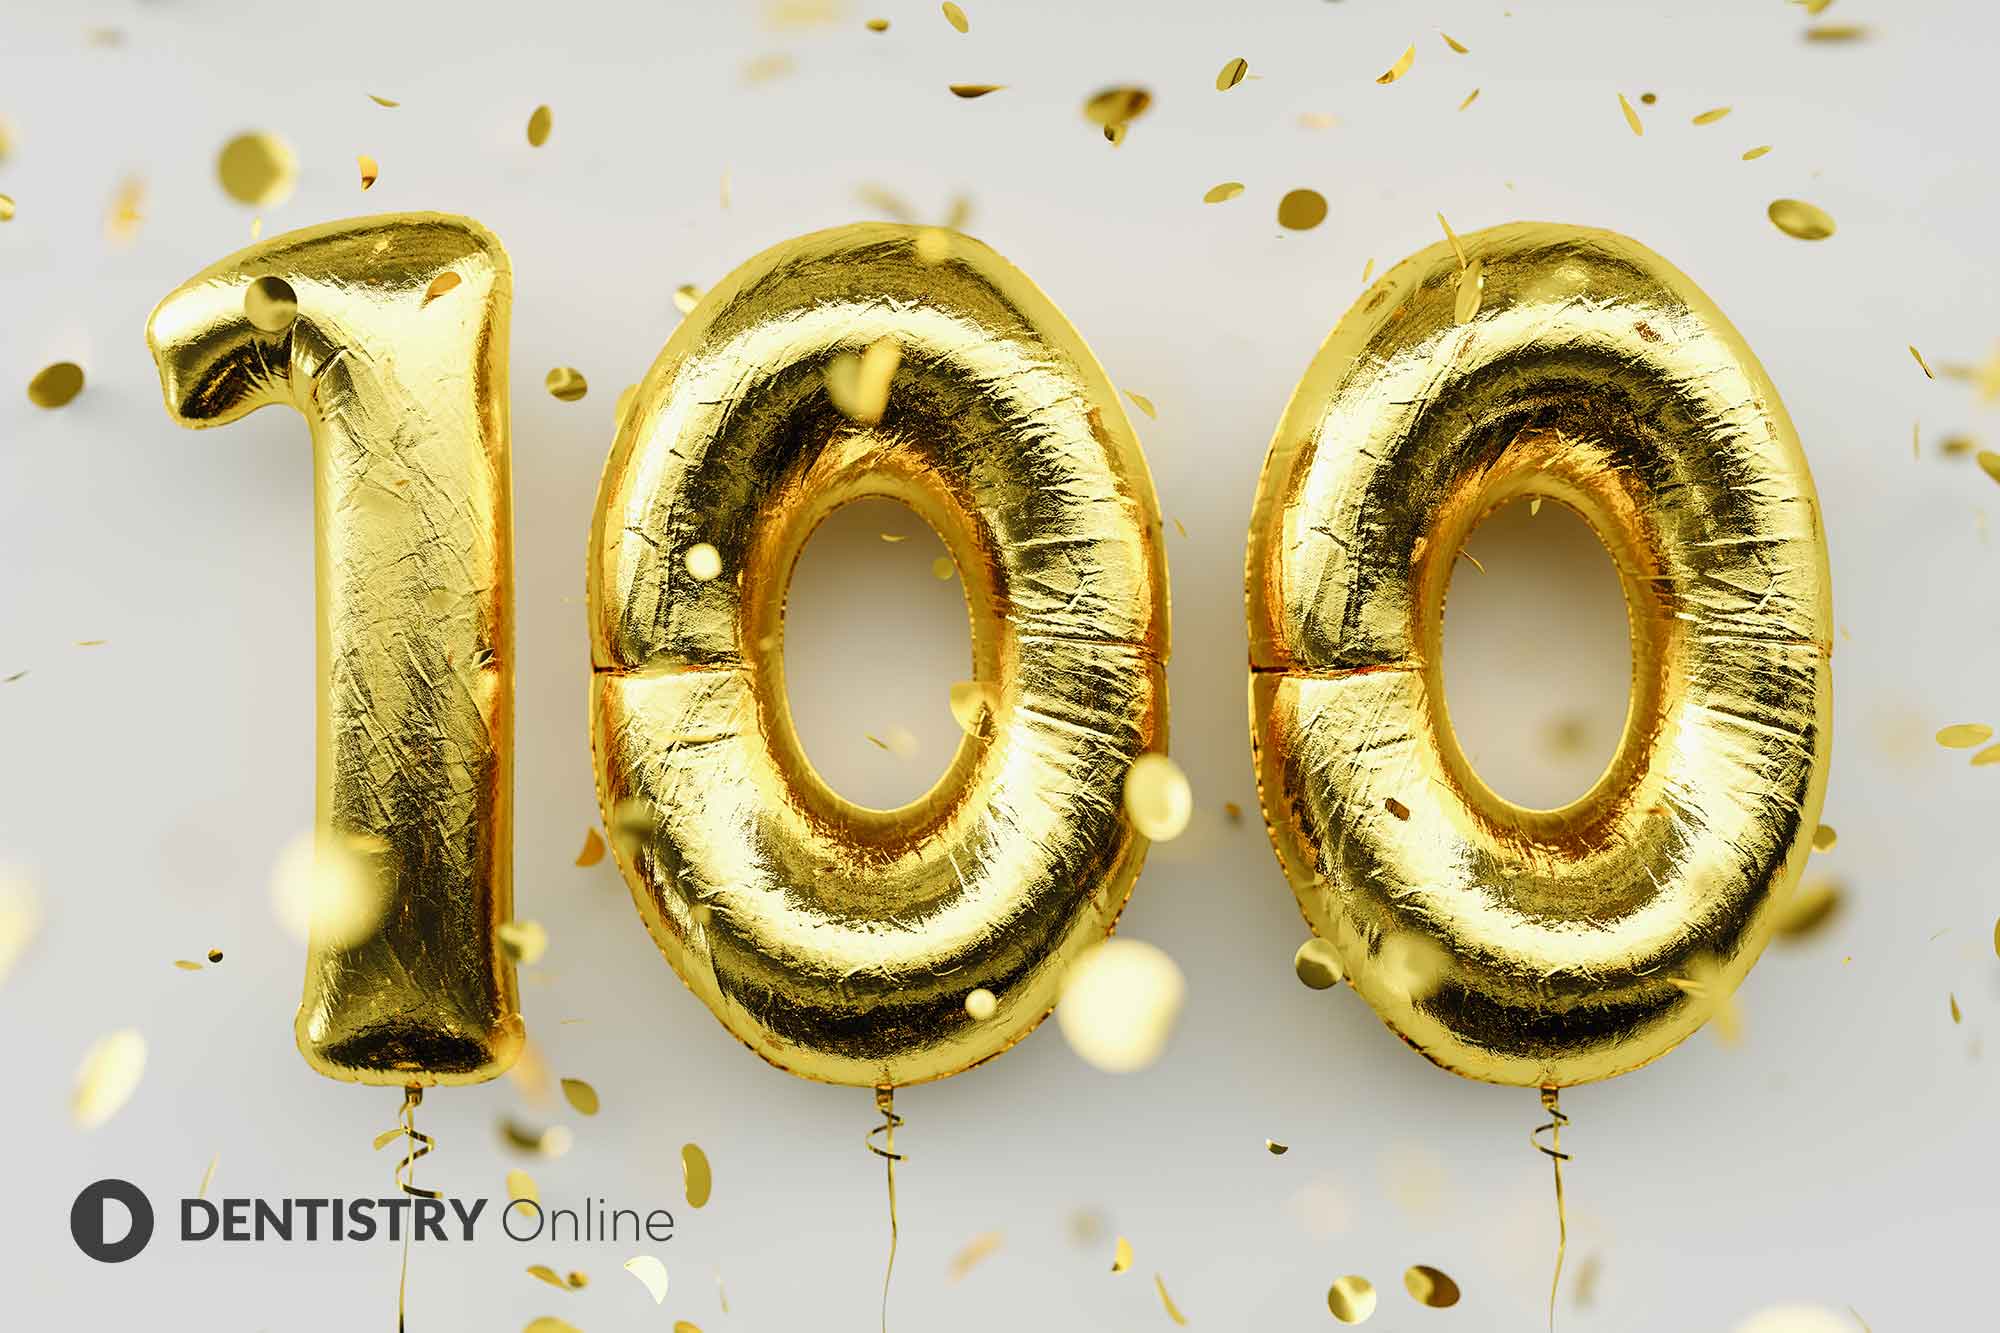 GC celebrates 100 years